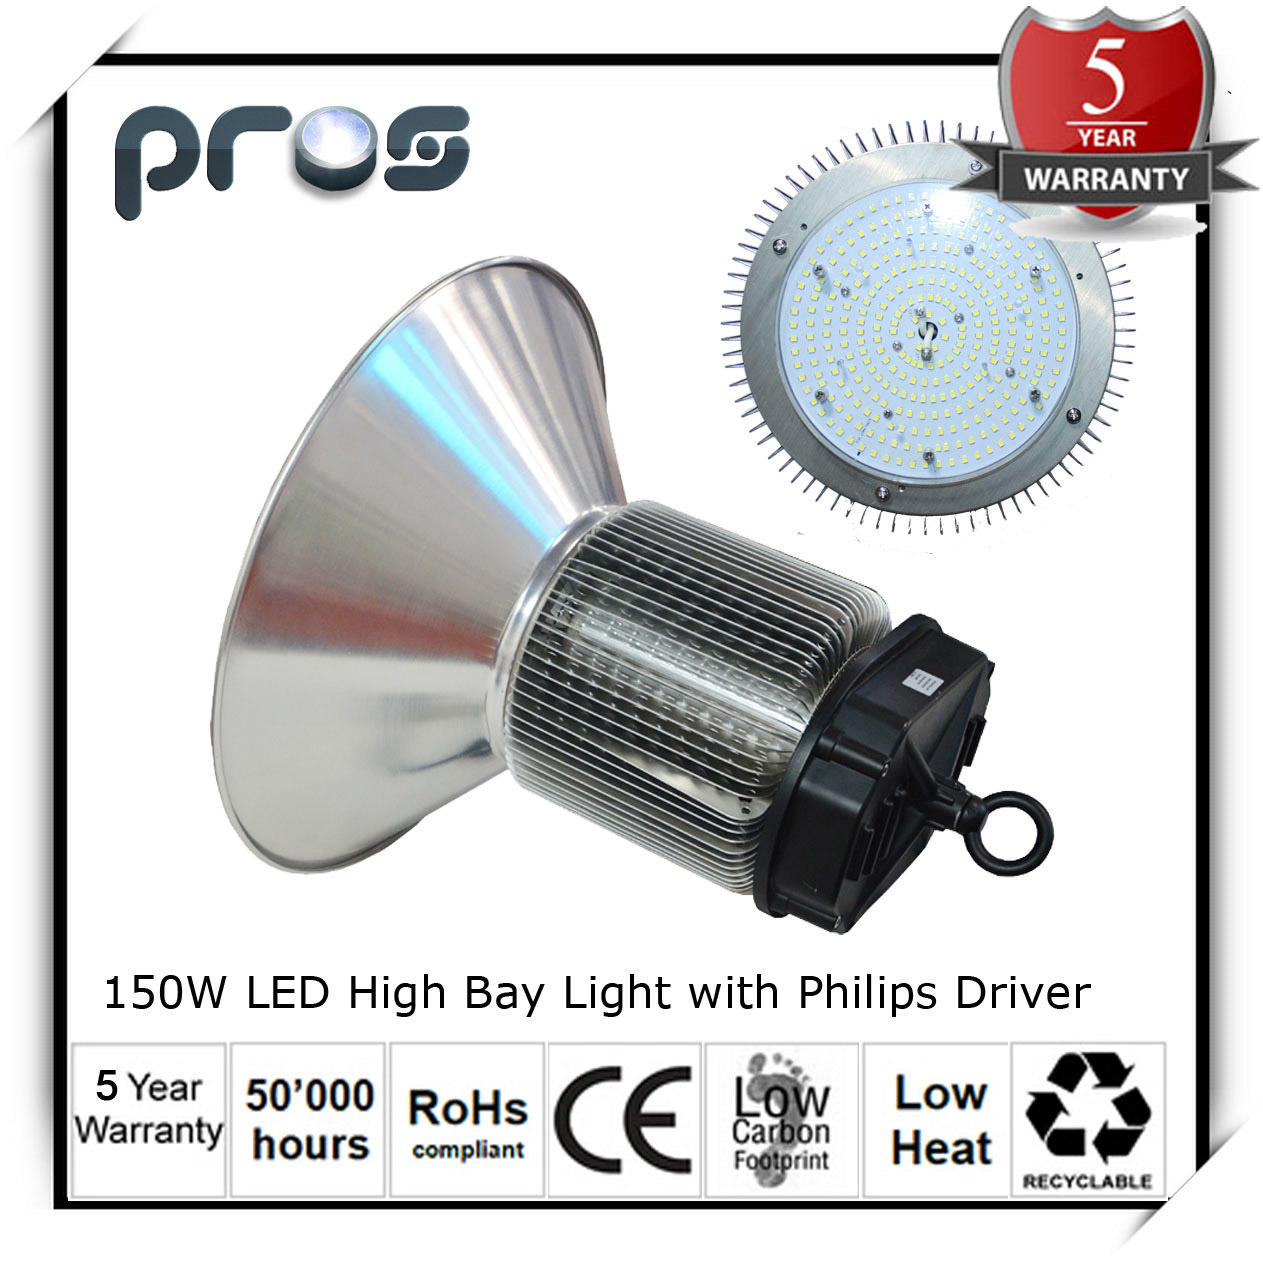 Warehouse Highbay LED Light, Philips Driver 150W LED High Bay Light